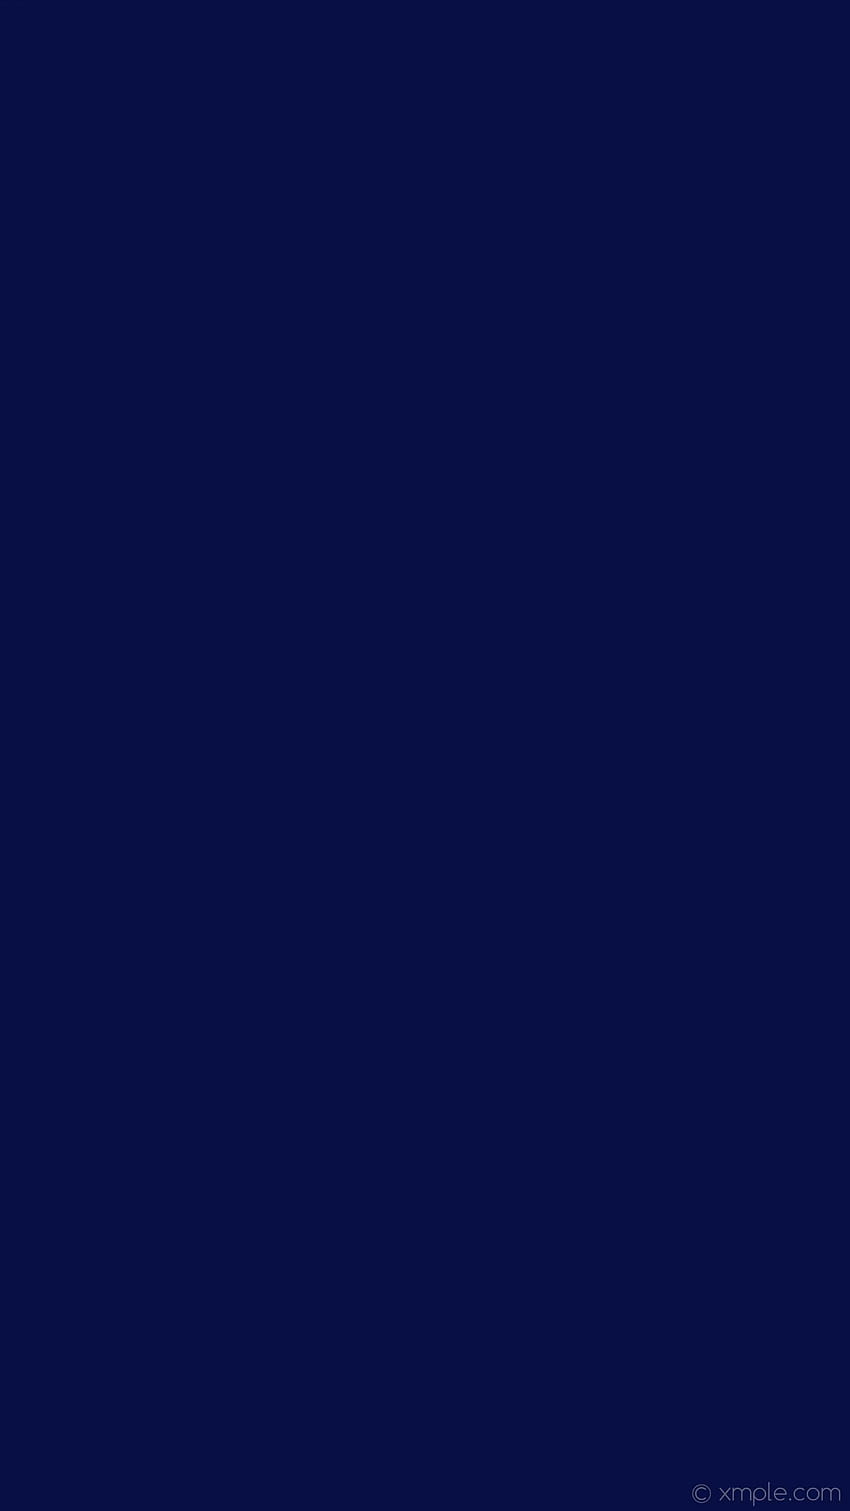 Mitternachtsblau Hochauflösendes Dunkelblau, einfarbiges marineblaues iphone HD-Handy-Hintergrundbild